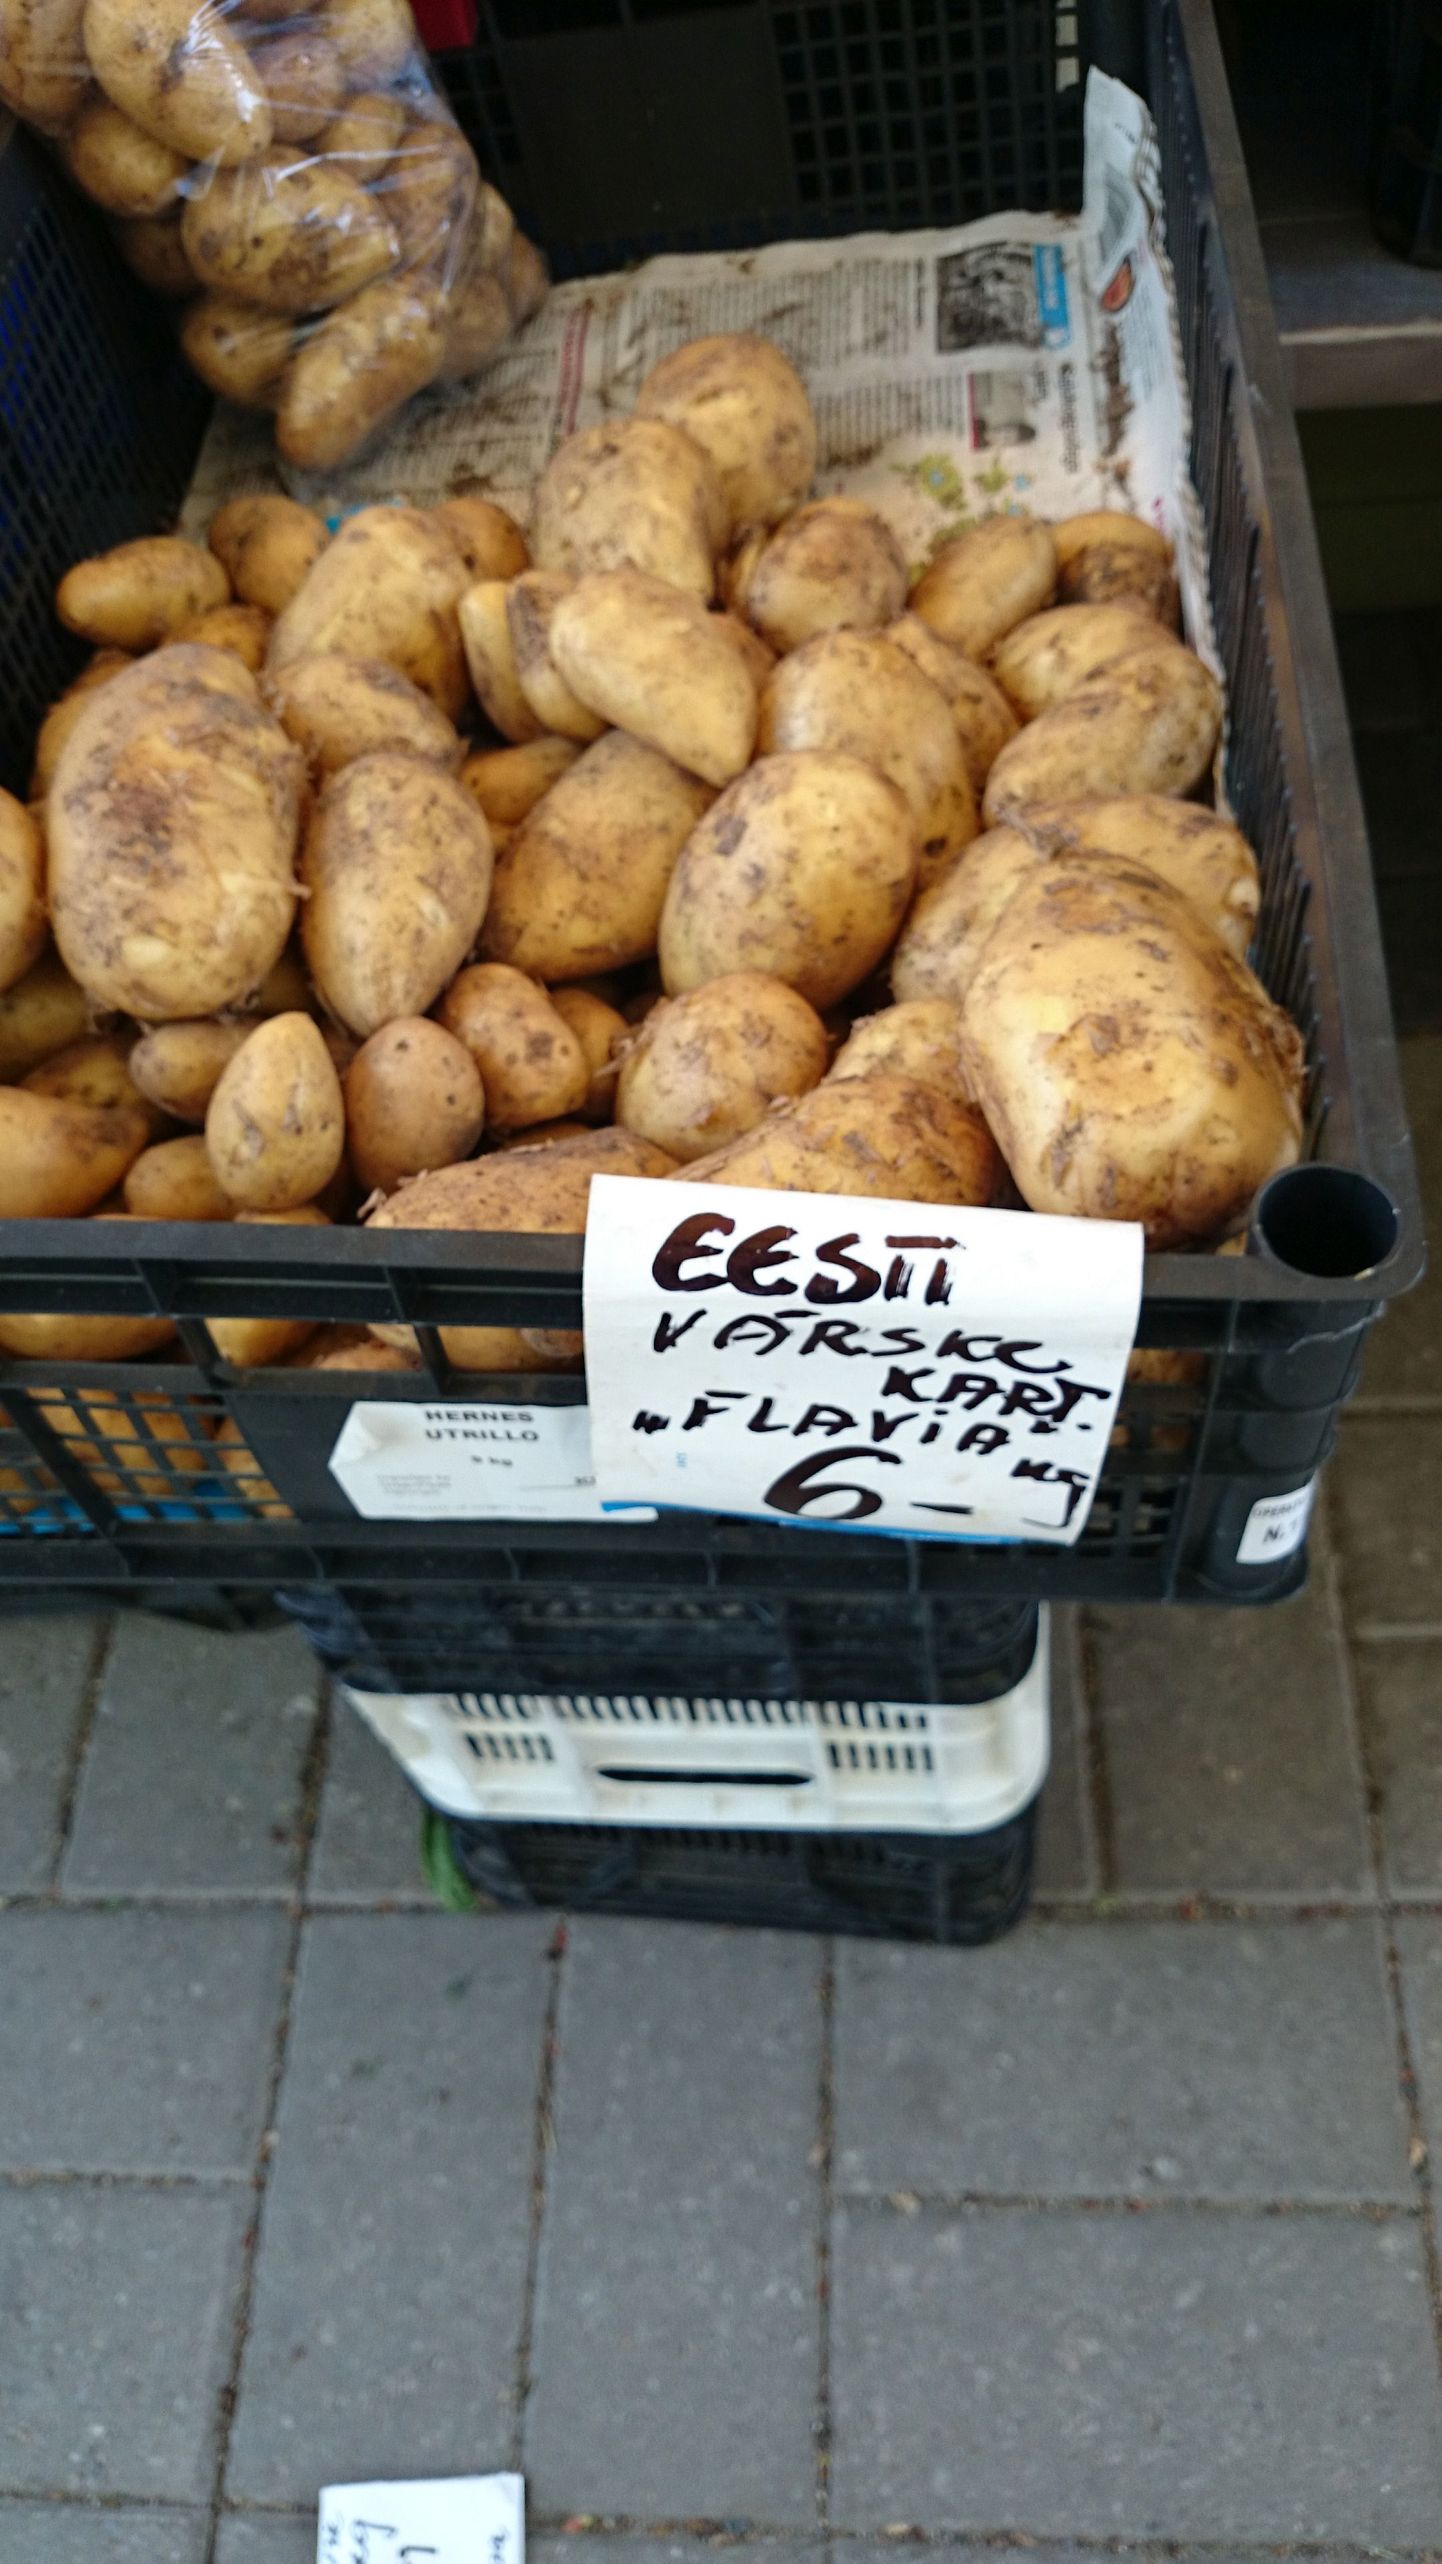 Молодой картофель стоит 6 евро за кило.